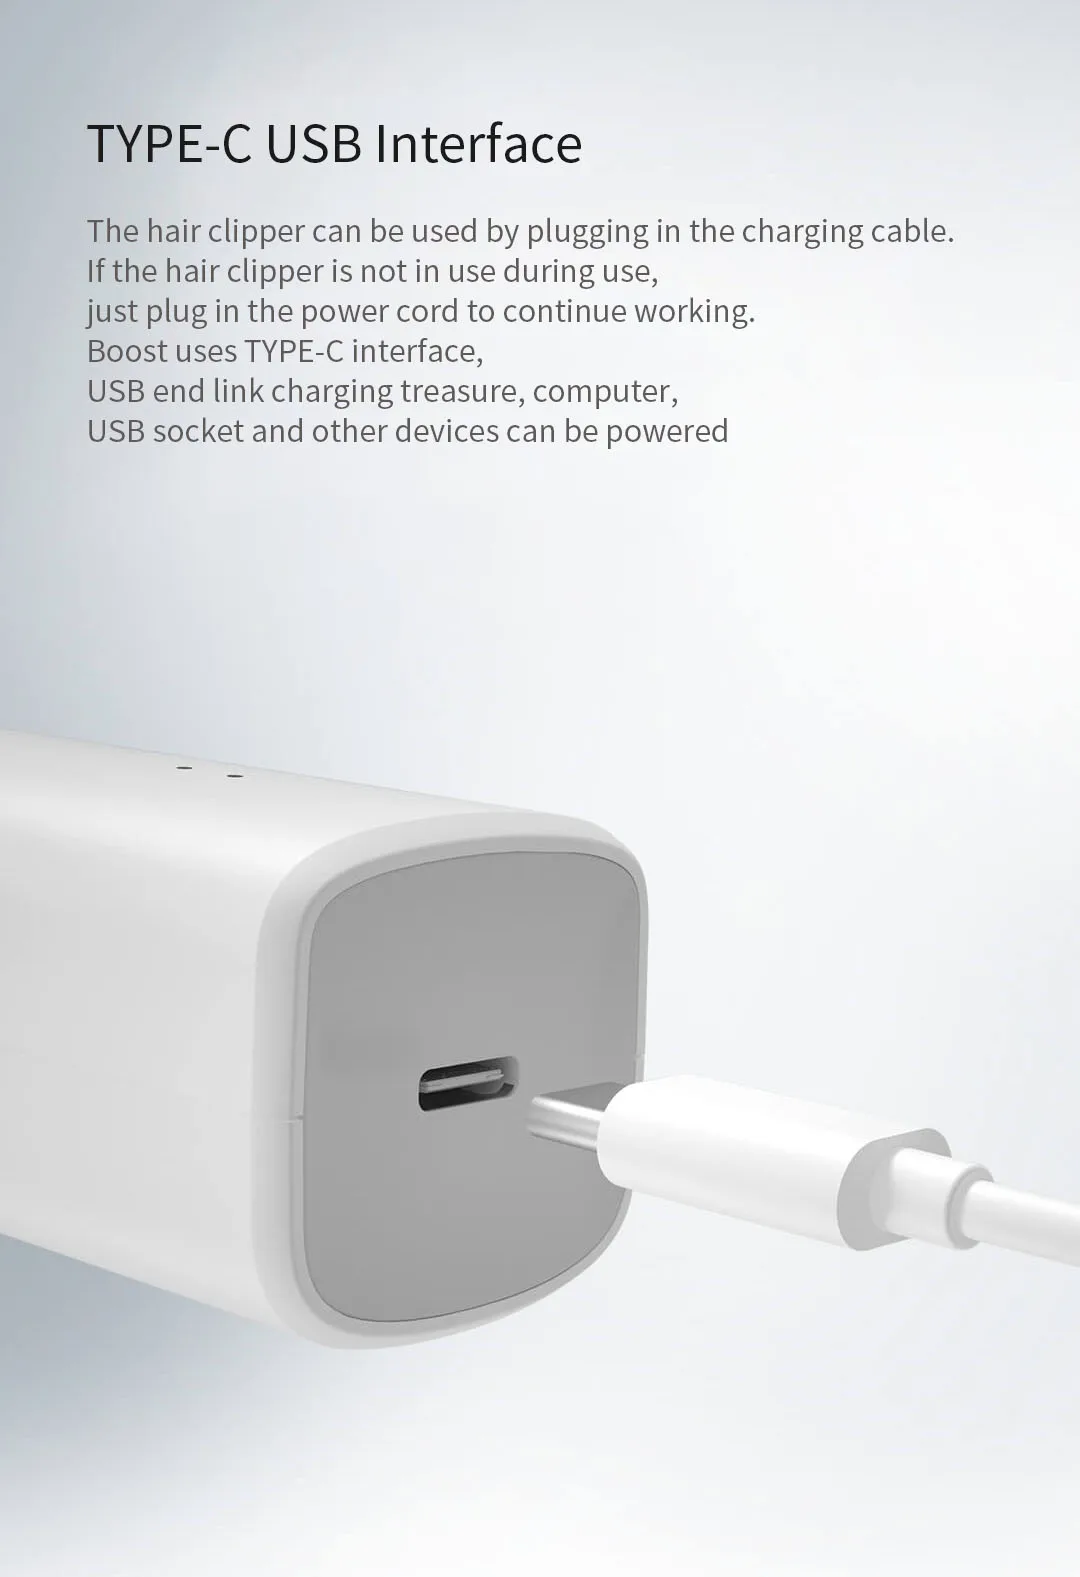 Xiaomi Mi Enchen Boost USB электрическая машинка для стрижки волос с двумя скоростями Керамический Резак для волос быстрая зарядка триммер для волос детская машинка для стрижки волос